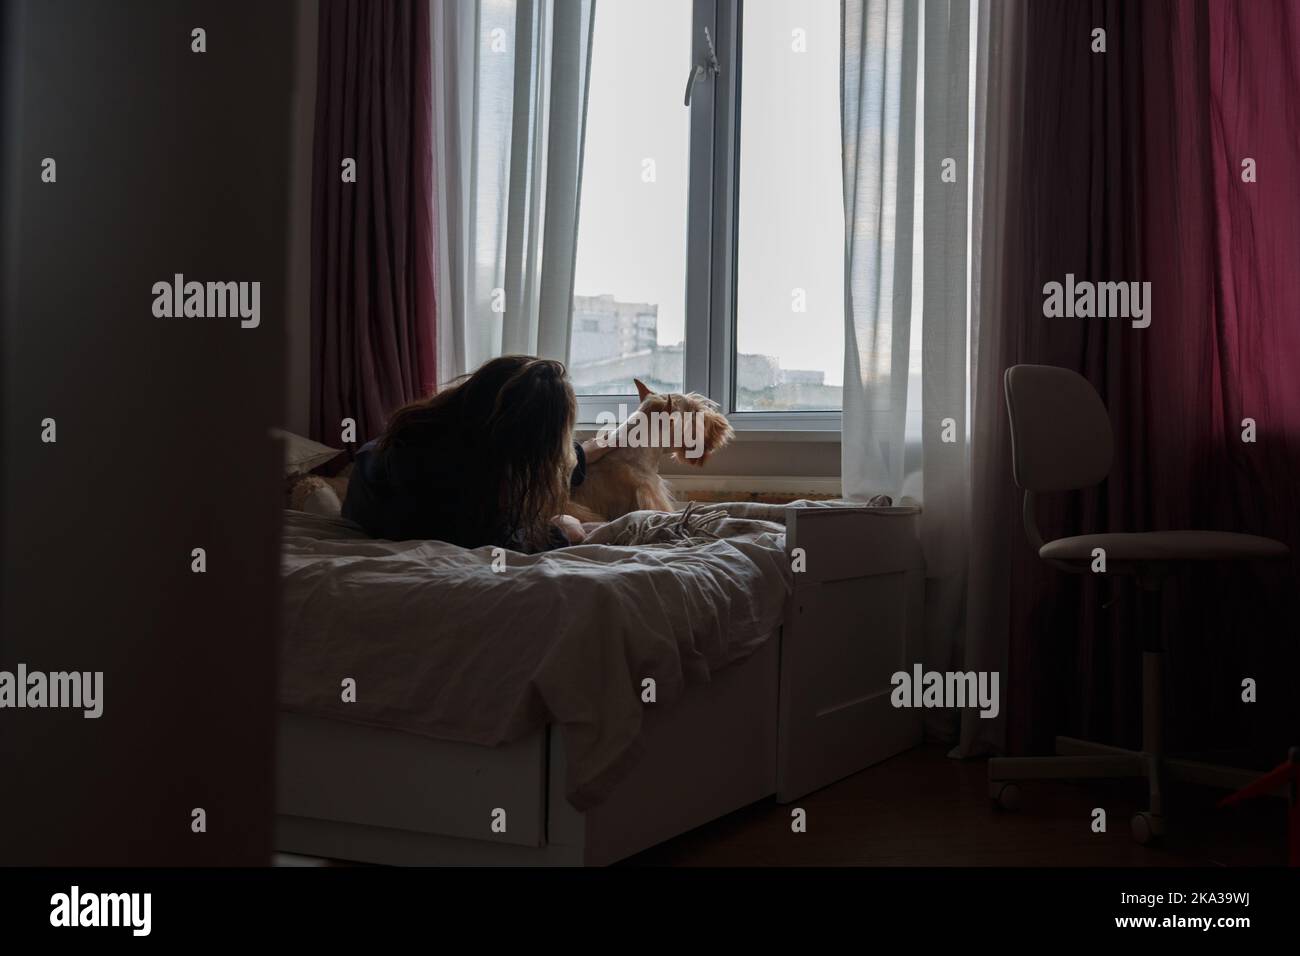 A girl and a dog on a large bed in a room by the window Stock Photo